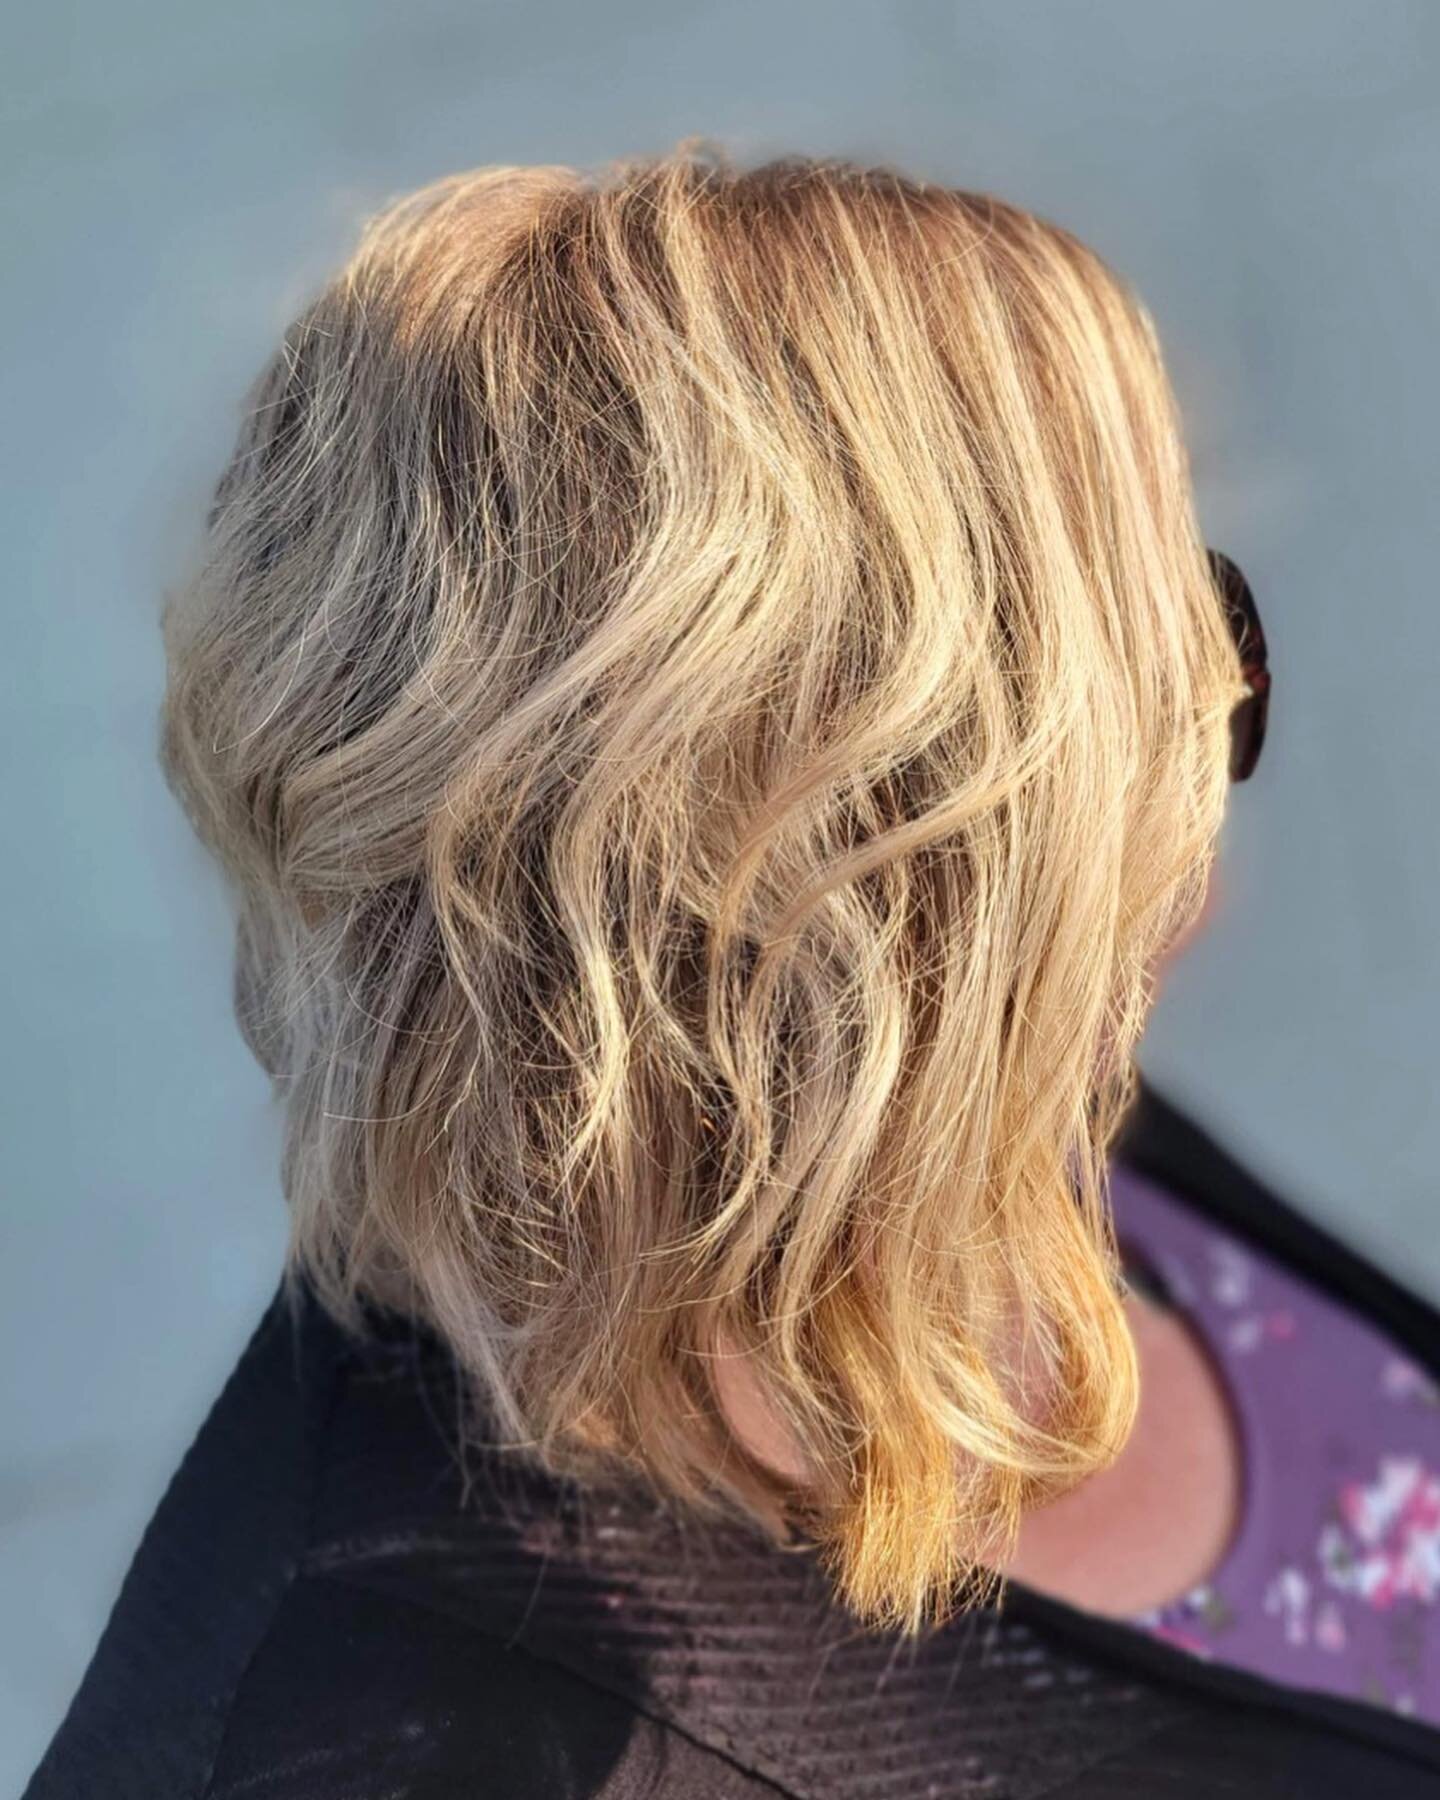 Beautiful blonde refresh on this superstar 🤩

Hair by @wildestylist